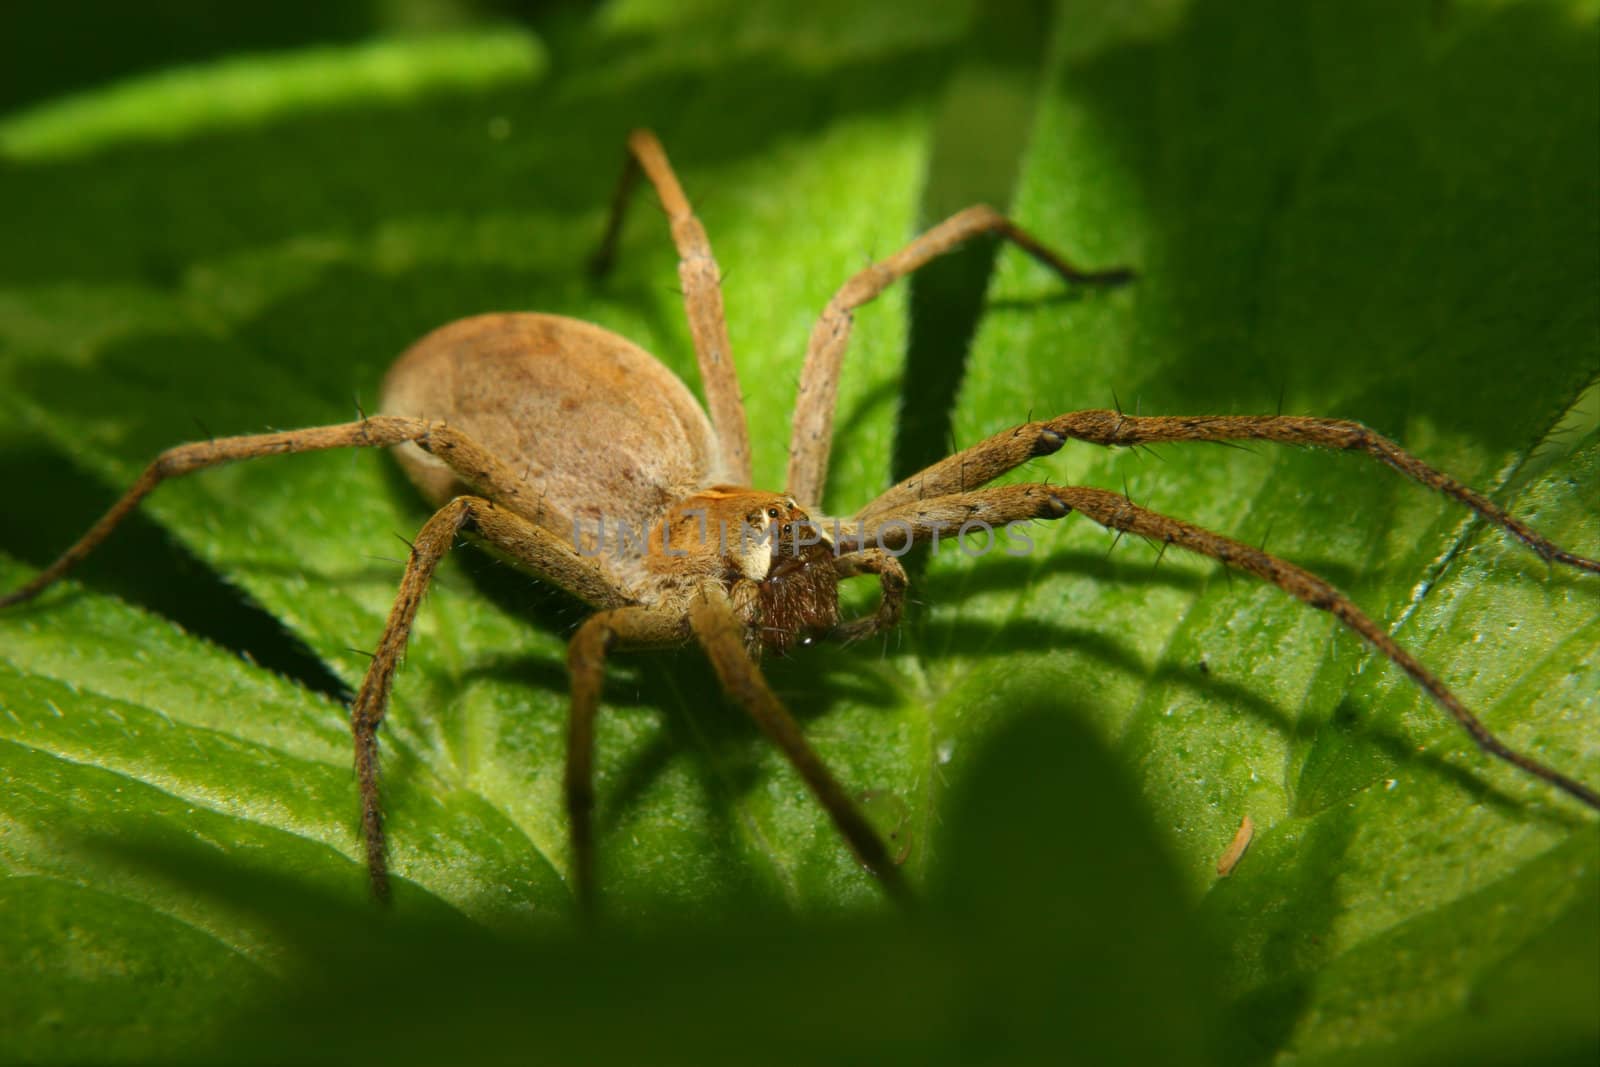 Nursery web spider (Pisaura mirabilis) by tdietrich